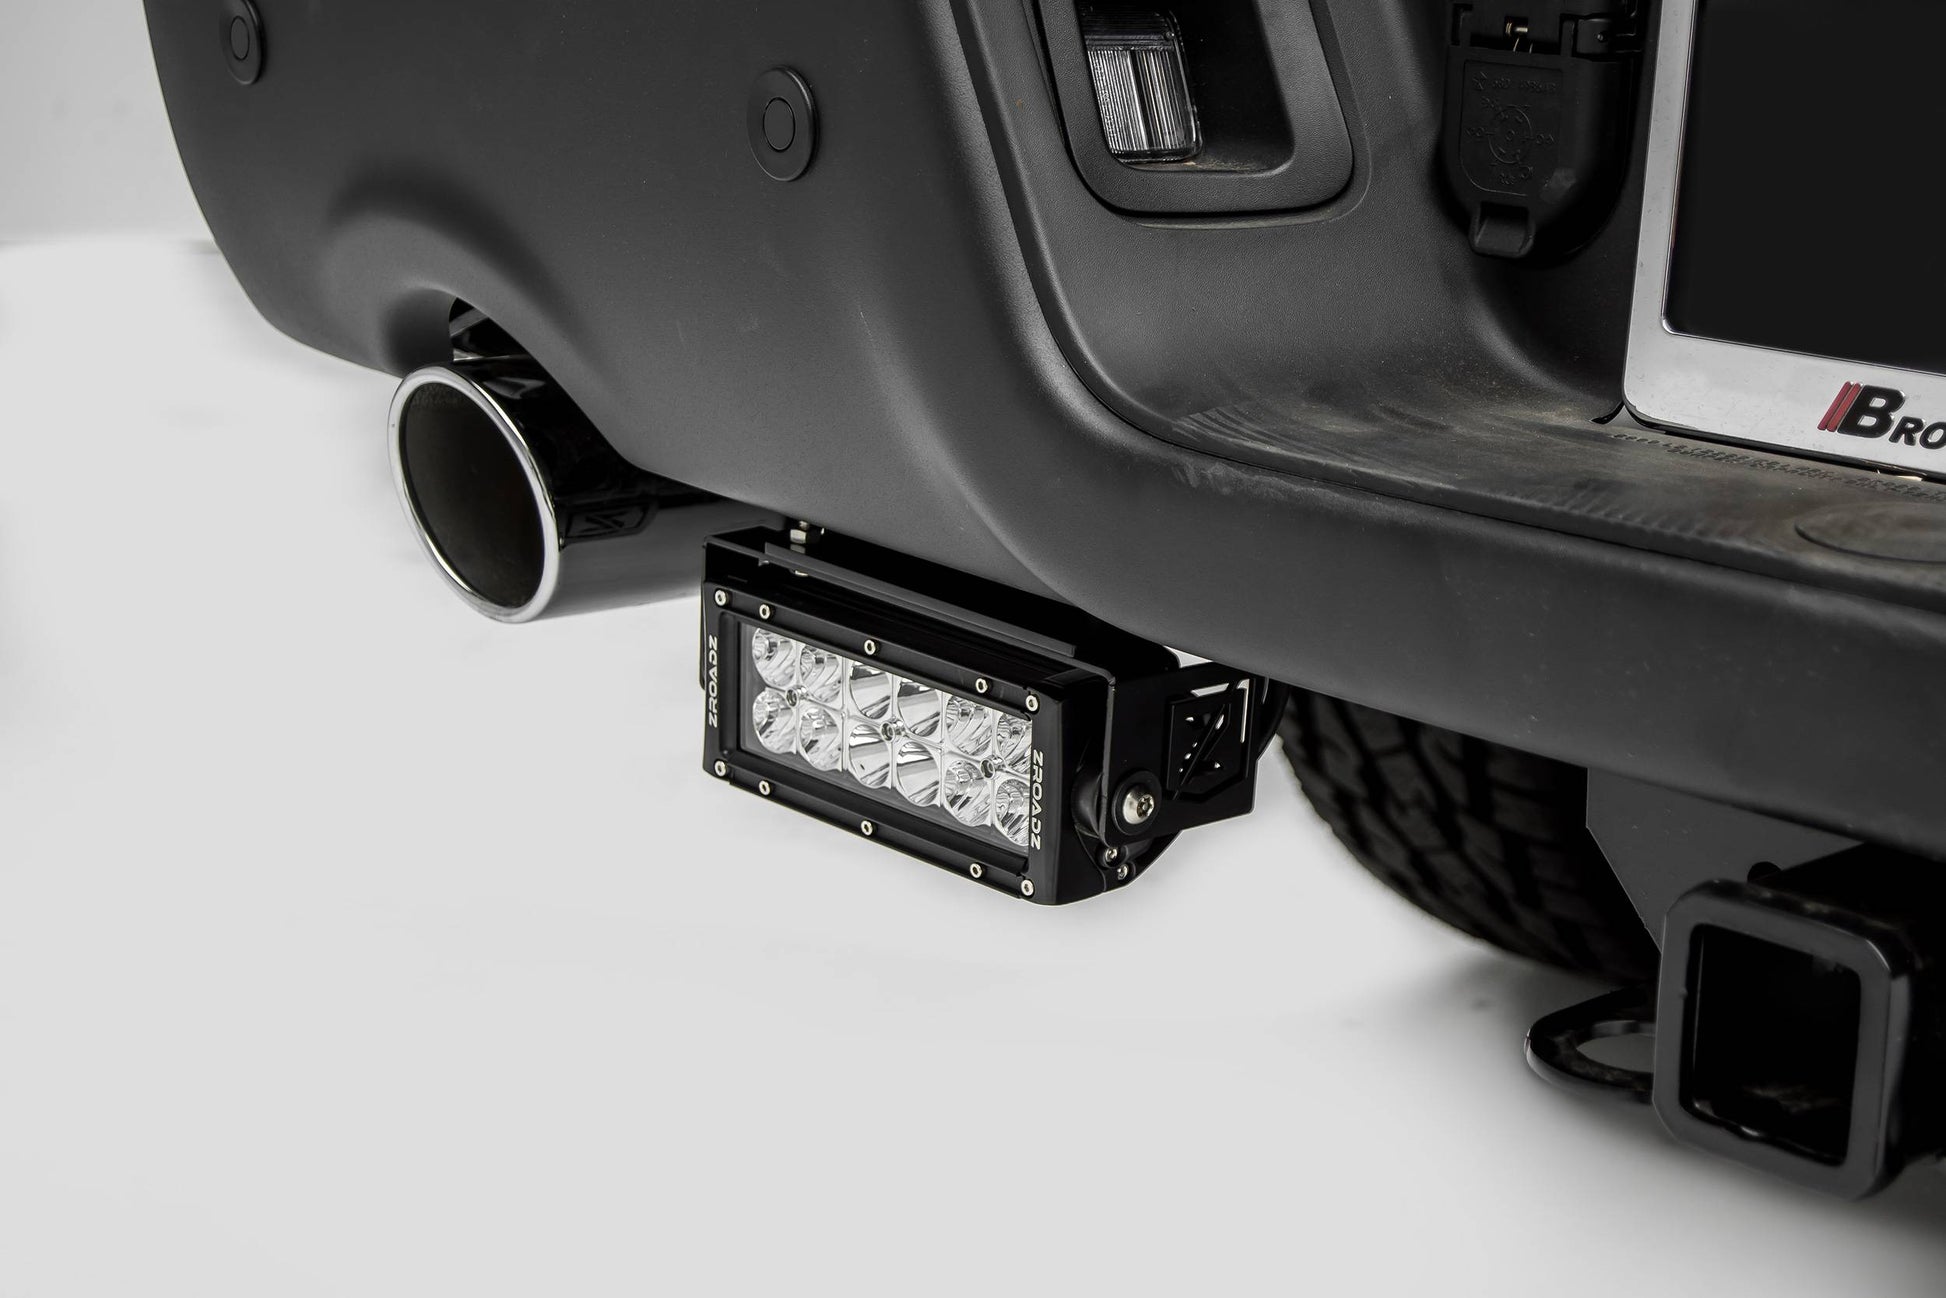 ZROADZ Z384551 Black Mild Steel Rear Bumper LED Bracket Fits 2015-2018 Ram Rebel